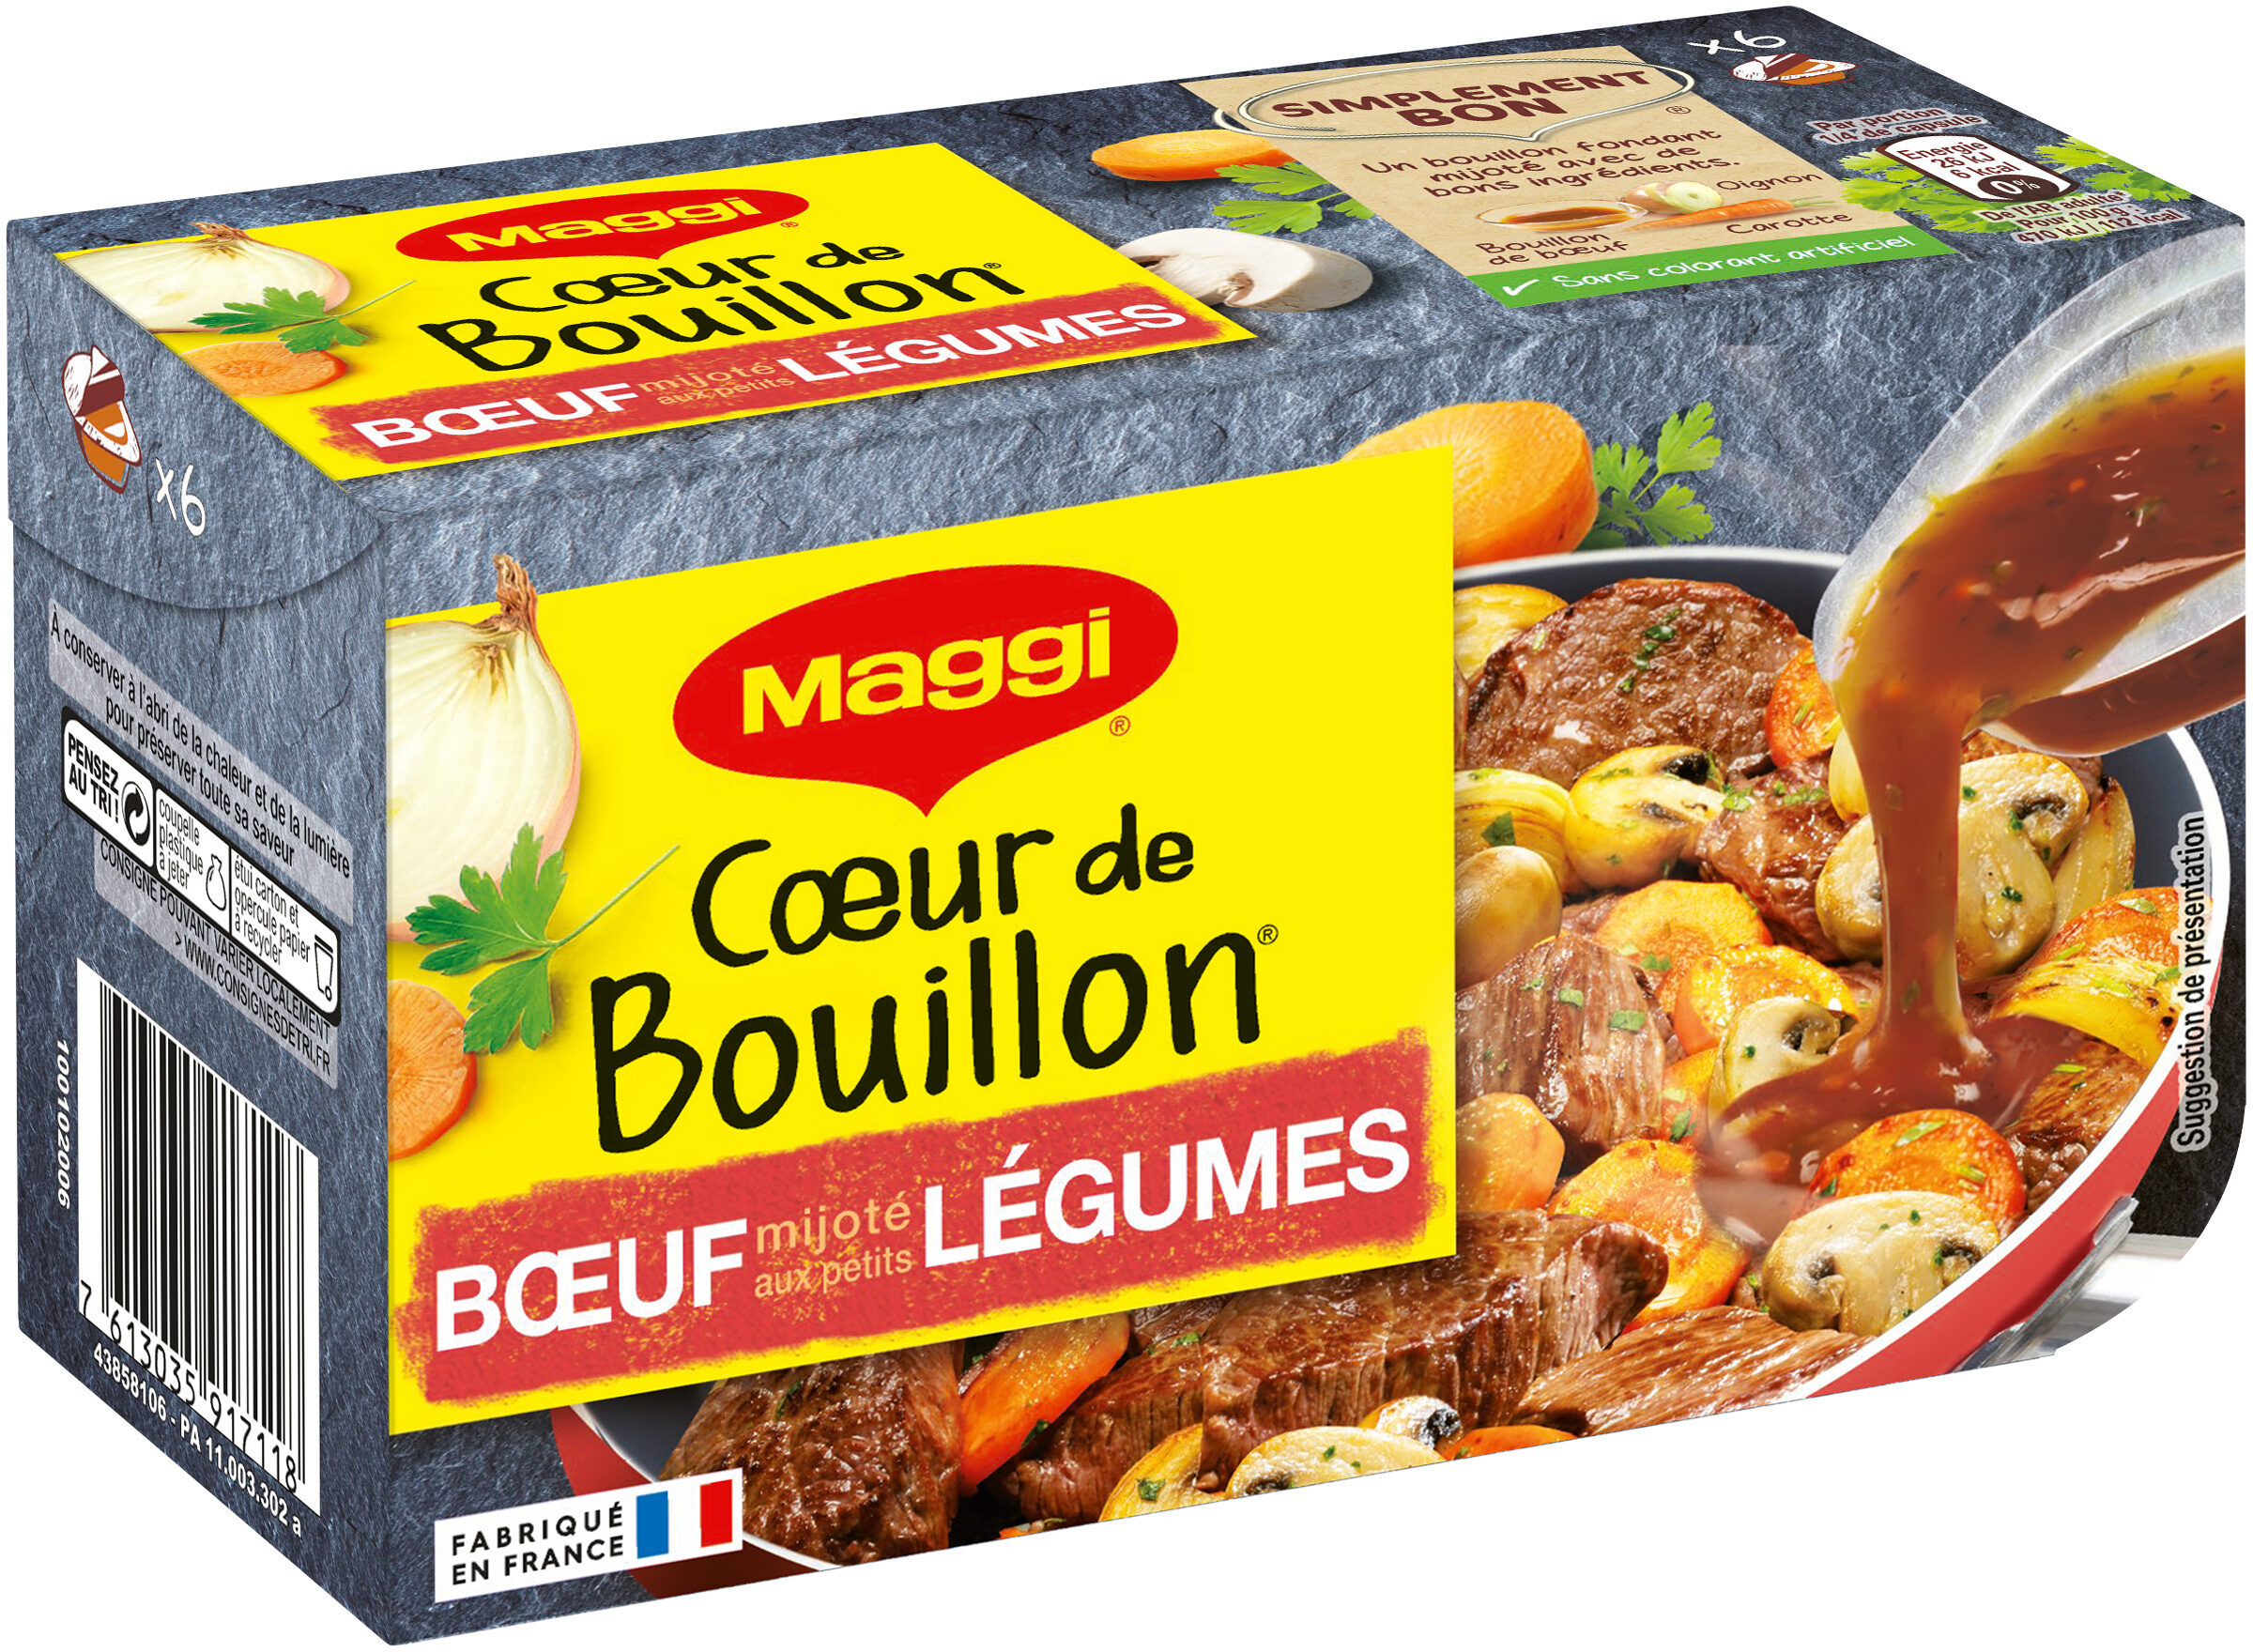 MAGGI Cœur de Bouillon Bœuf mijoté aux petits légumes 6x22g = 132g - Produkt - fr